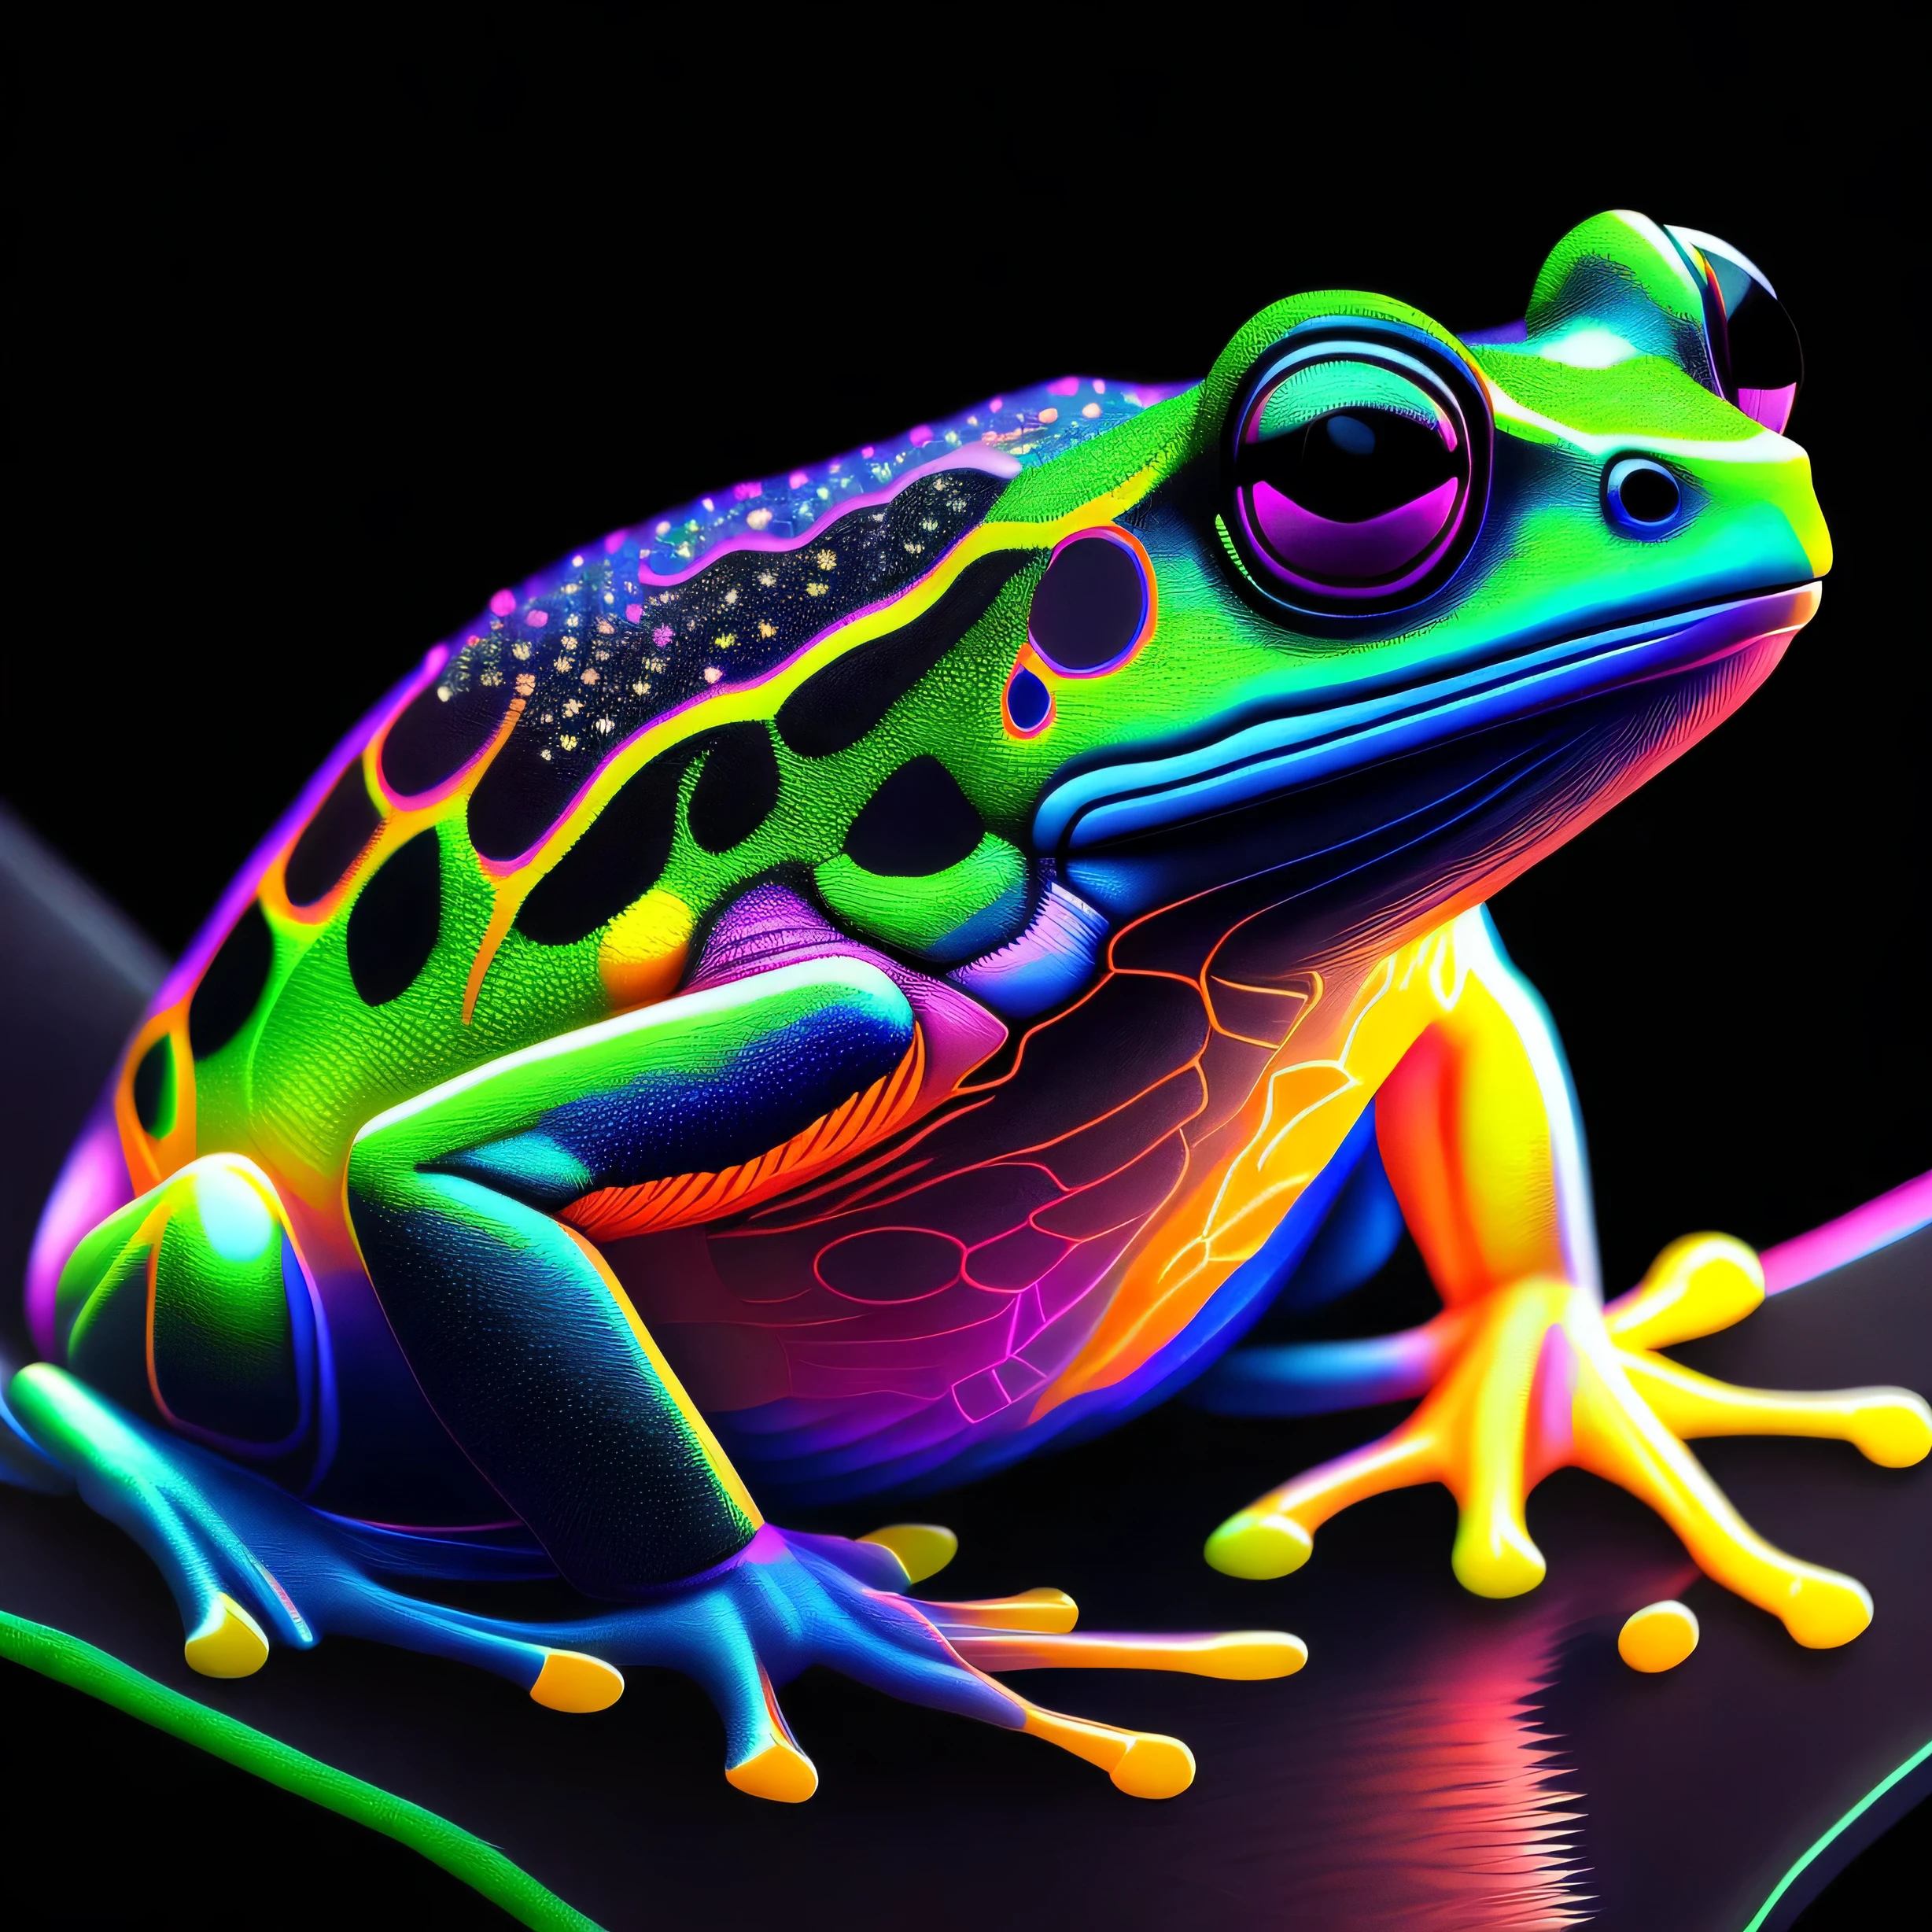 ArtStation - Aesthetic Kawaii Frog